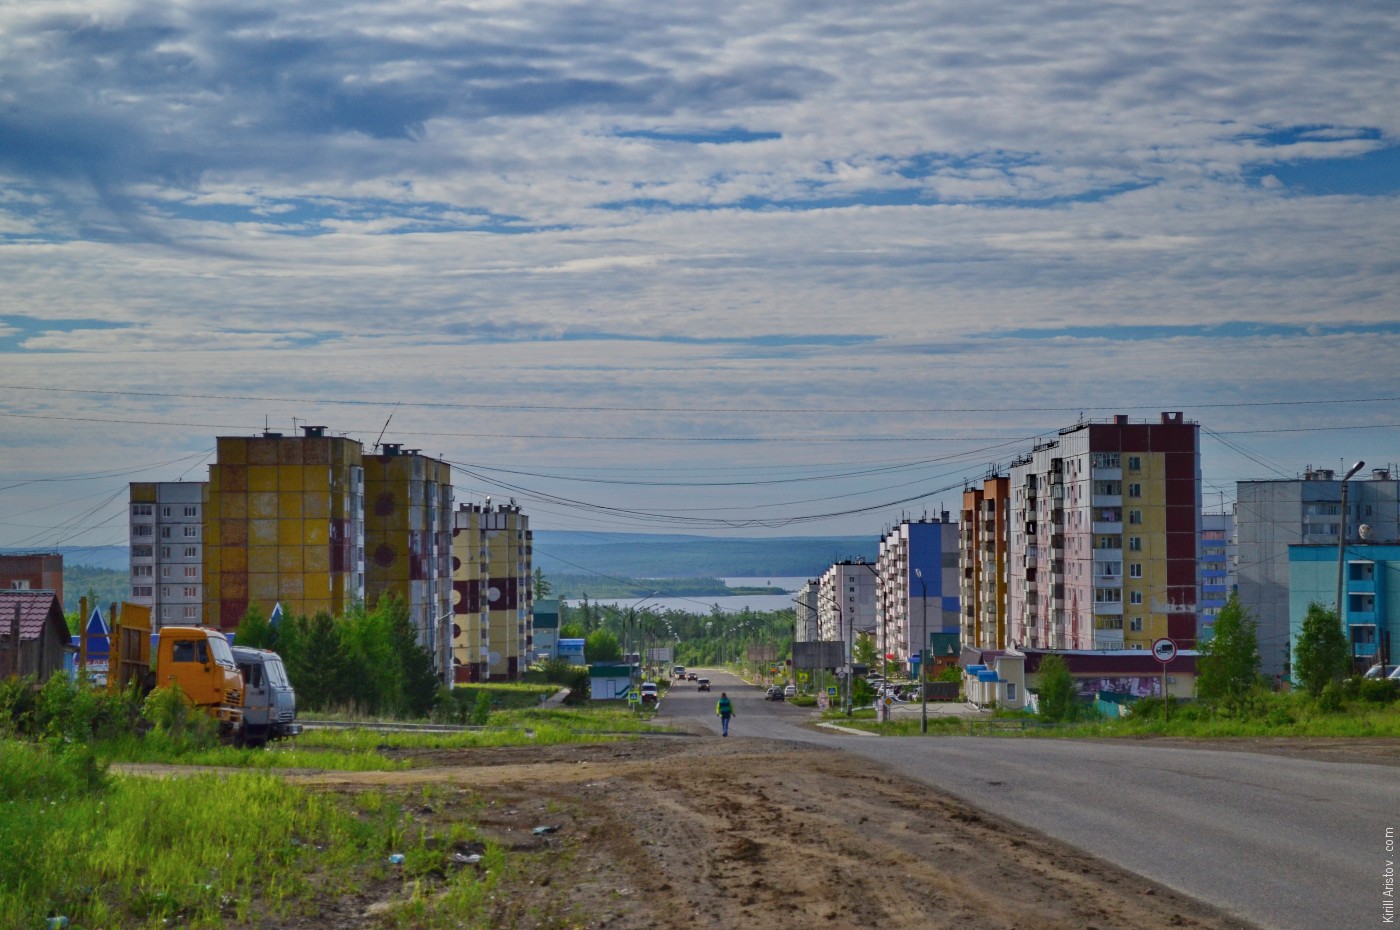 Город в тайге, Location: Город Кодинск на Ангаре.